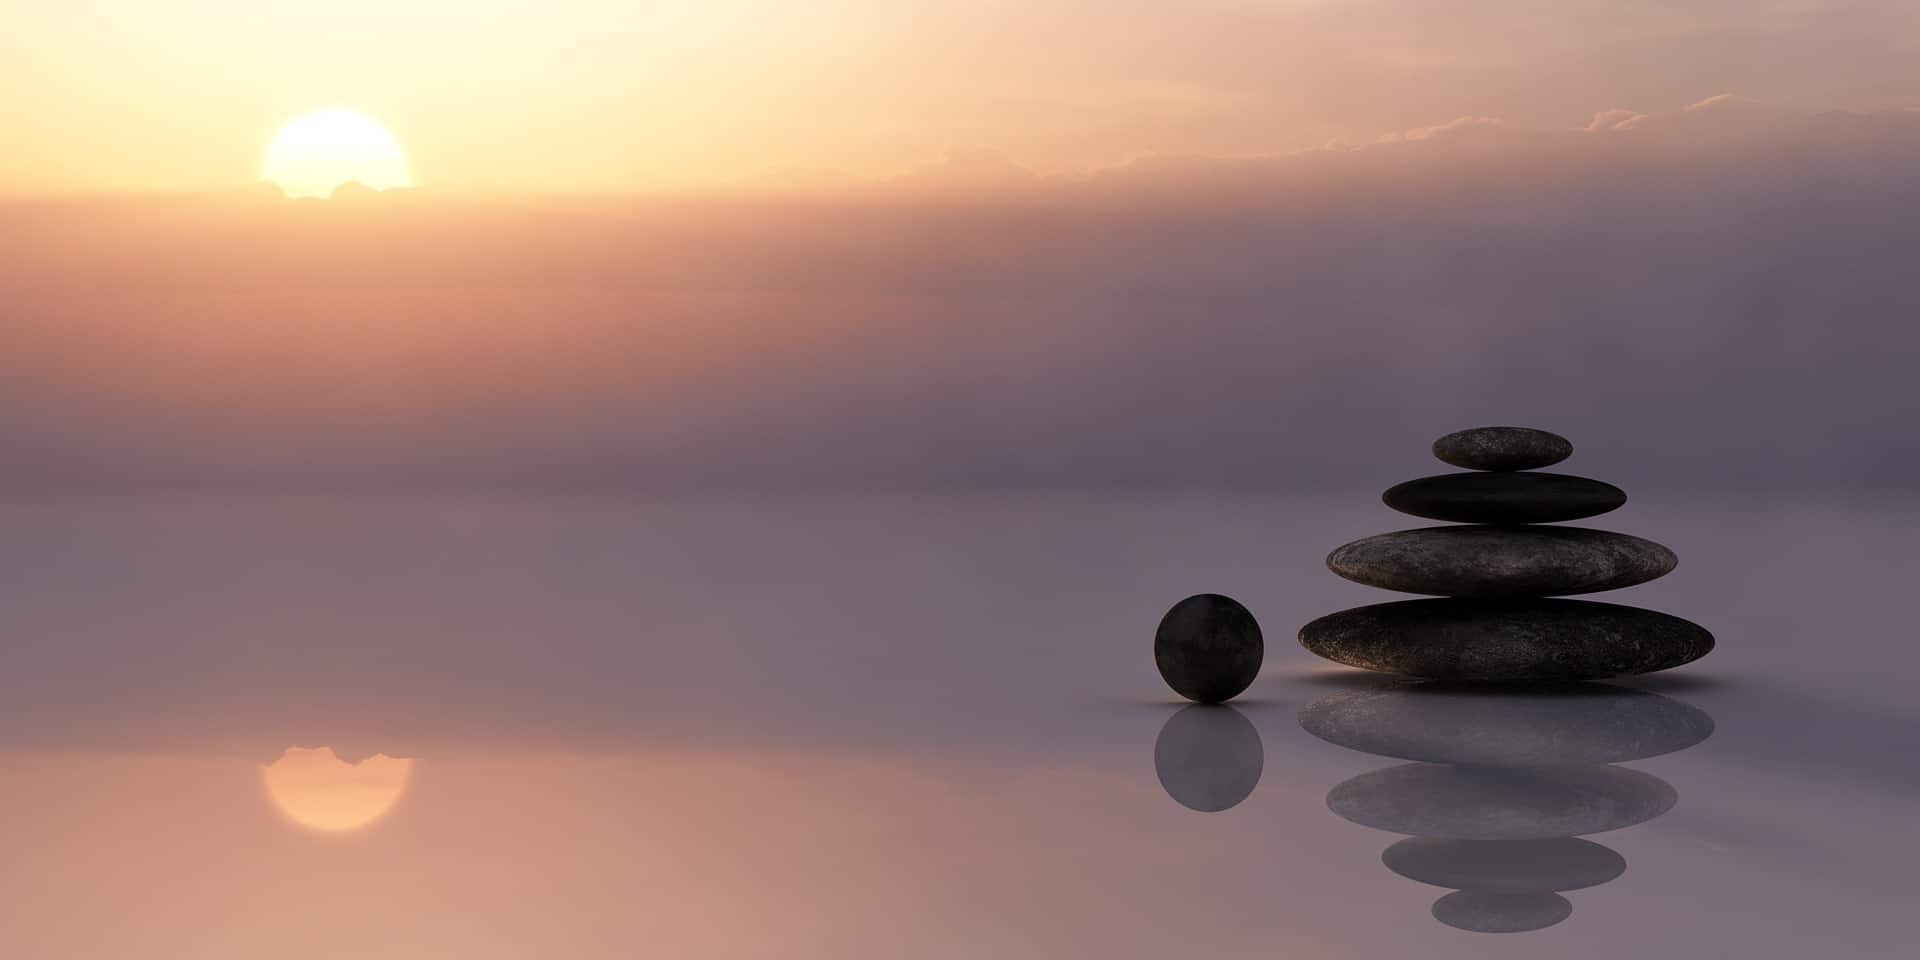 Как использовать управляемую медитацию для спокойствия и внимательности